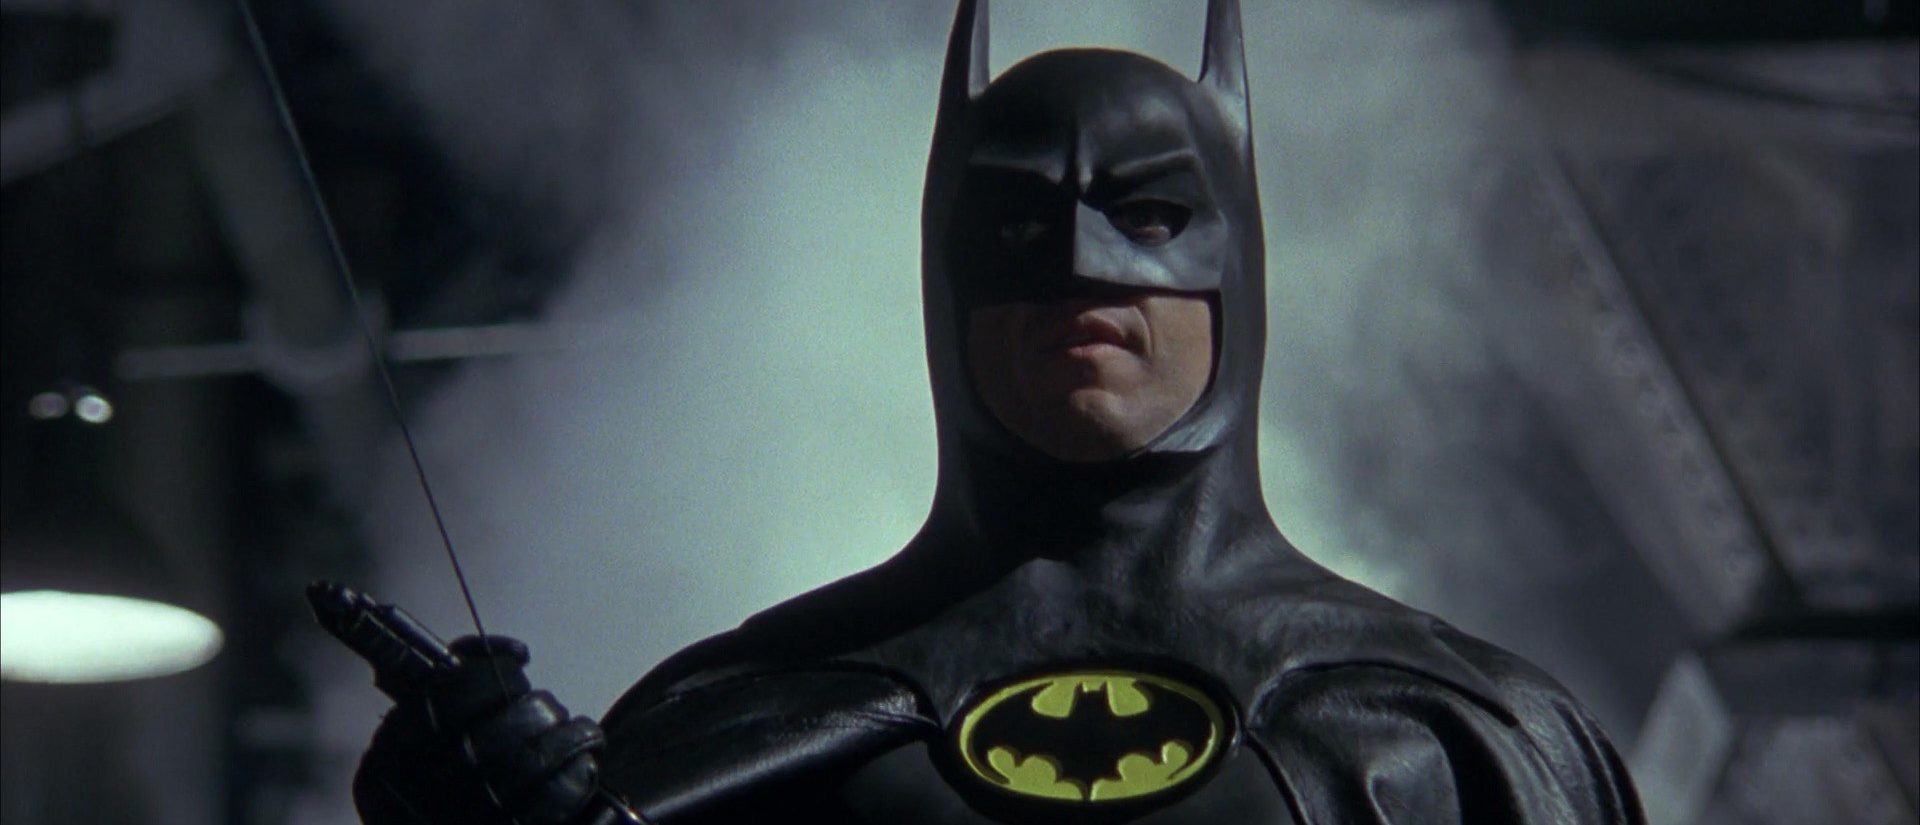 Batman, Released In 1989